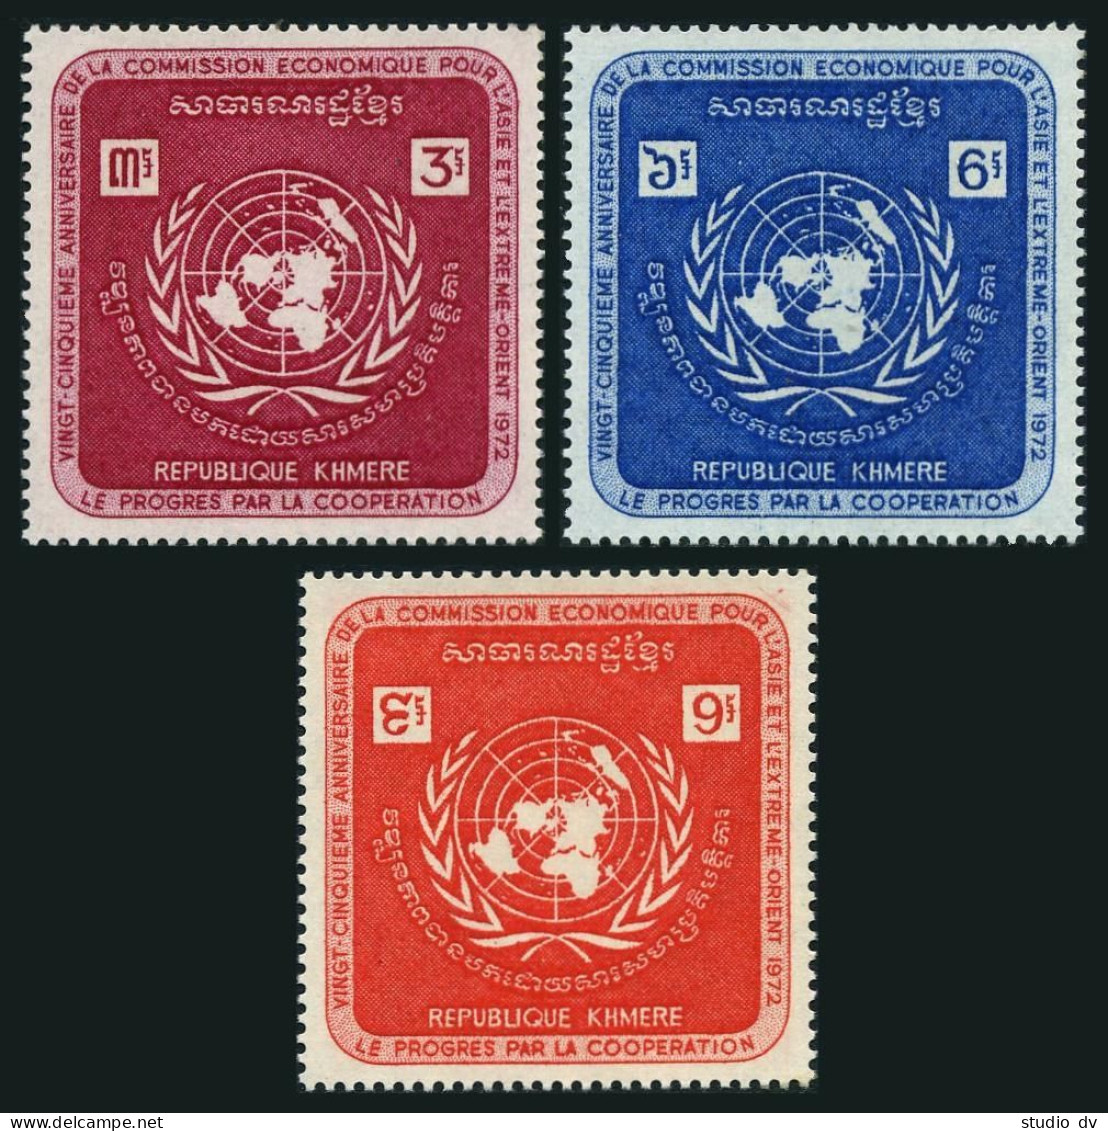 Cambodia 278-280,MNH.Michel 321-323. UN Economic Commission ECAFE,1972. - Cambodia